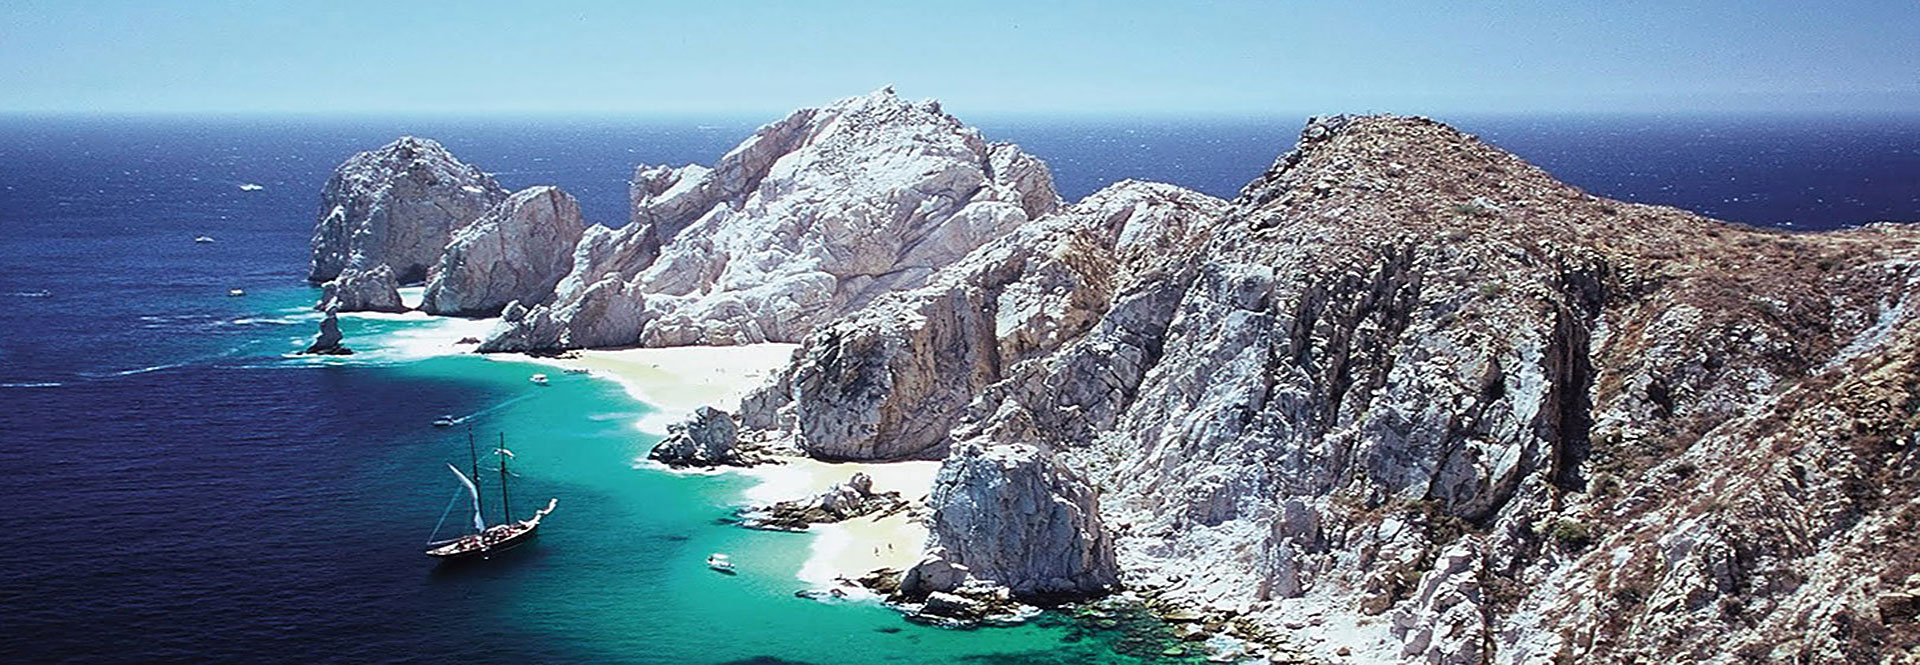 Pearl of Baja Sur California - Cabo-San-Lucas - Mexico